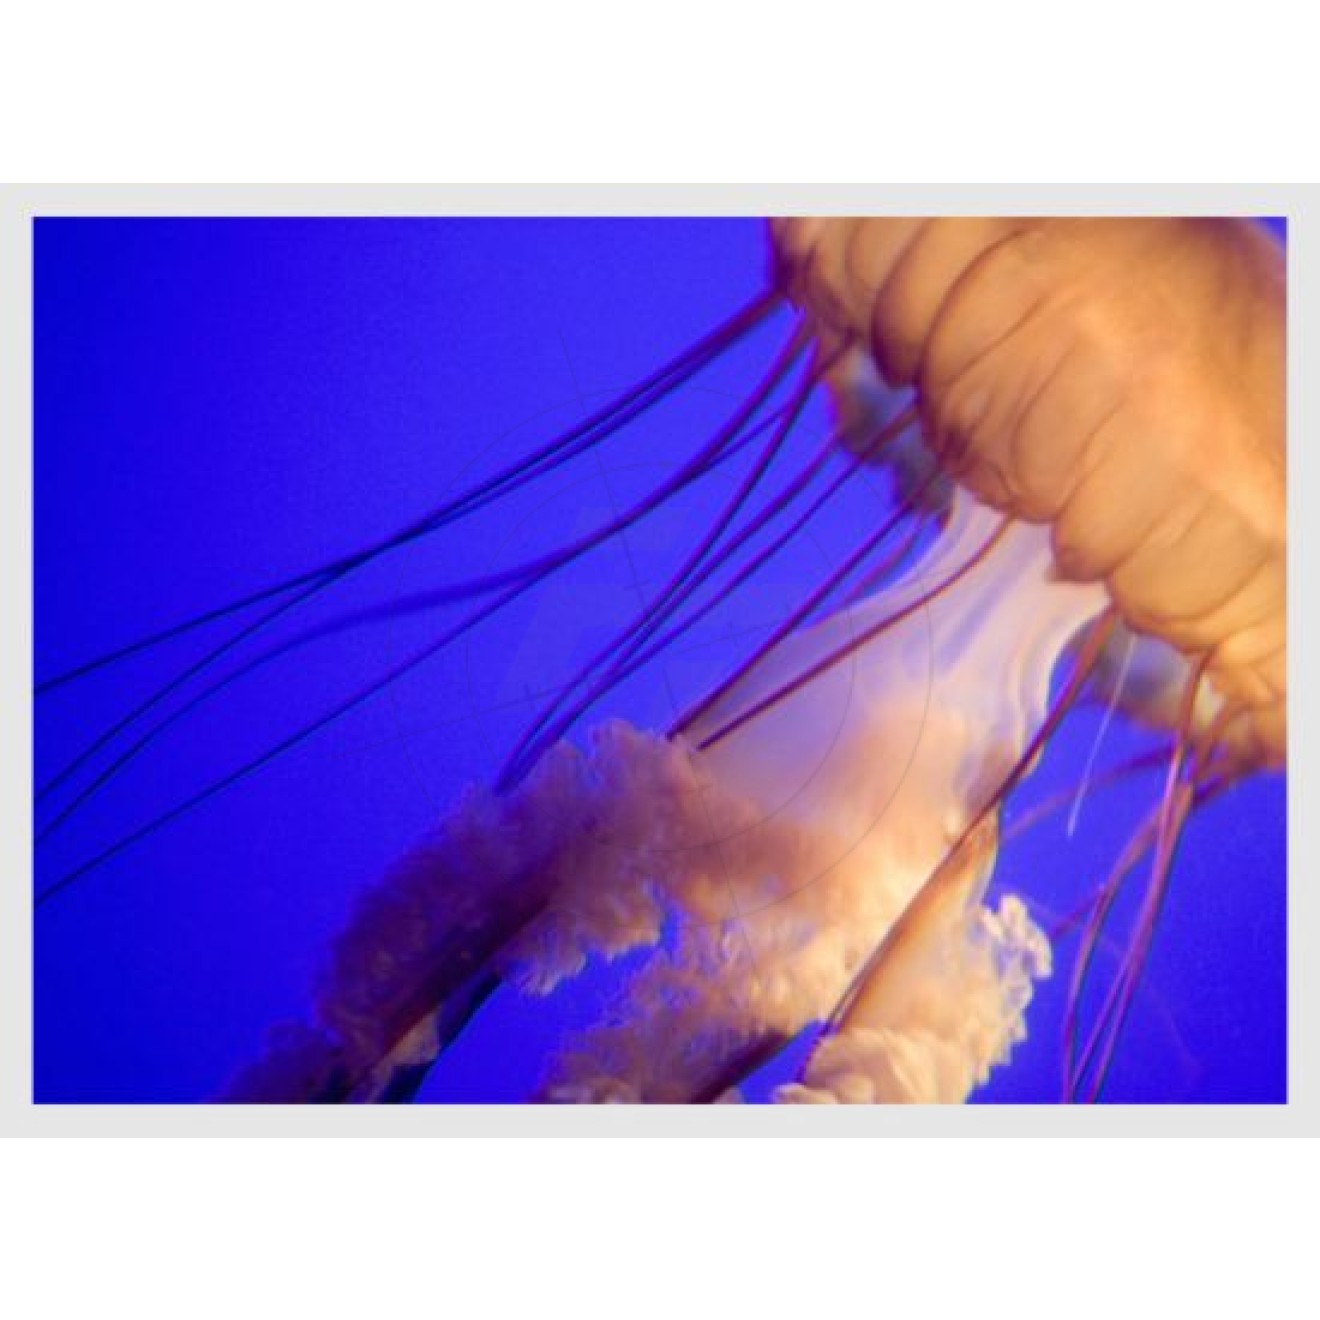 Medusa jellyfish